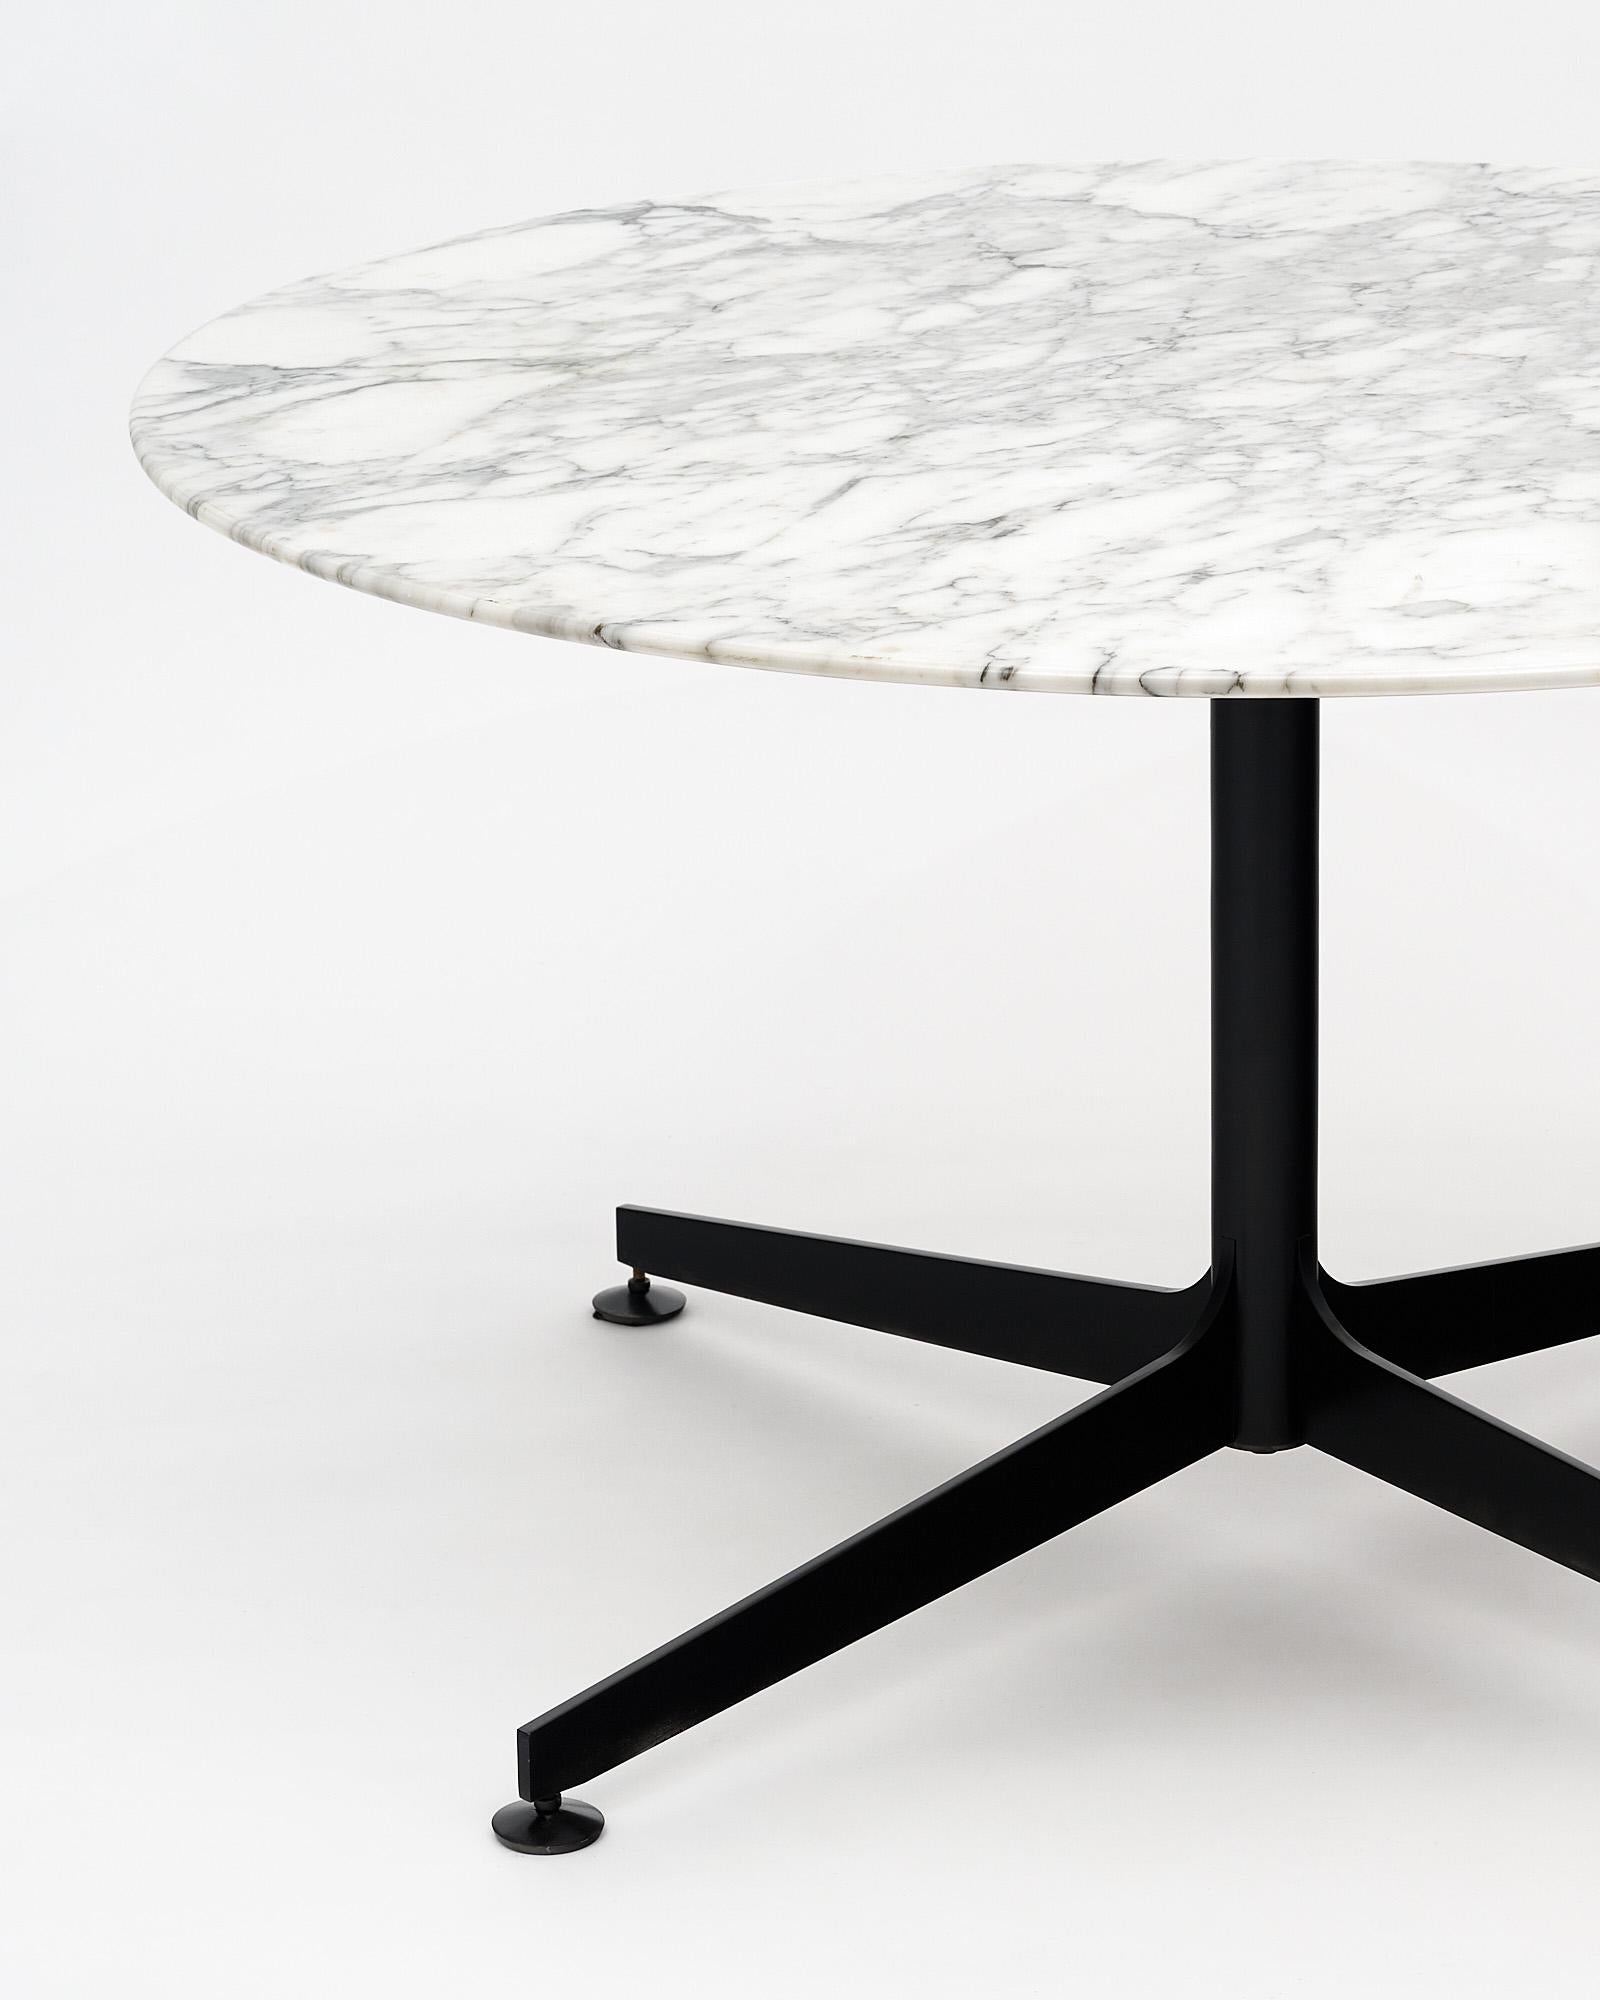 Table de salle à manger ronde en marbre de Knoll avec une base en acier noir supportant une dalle de Carrare intacte, épaisse et veinée. Pieds réglables.